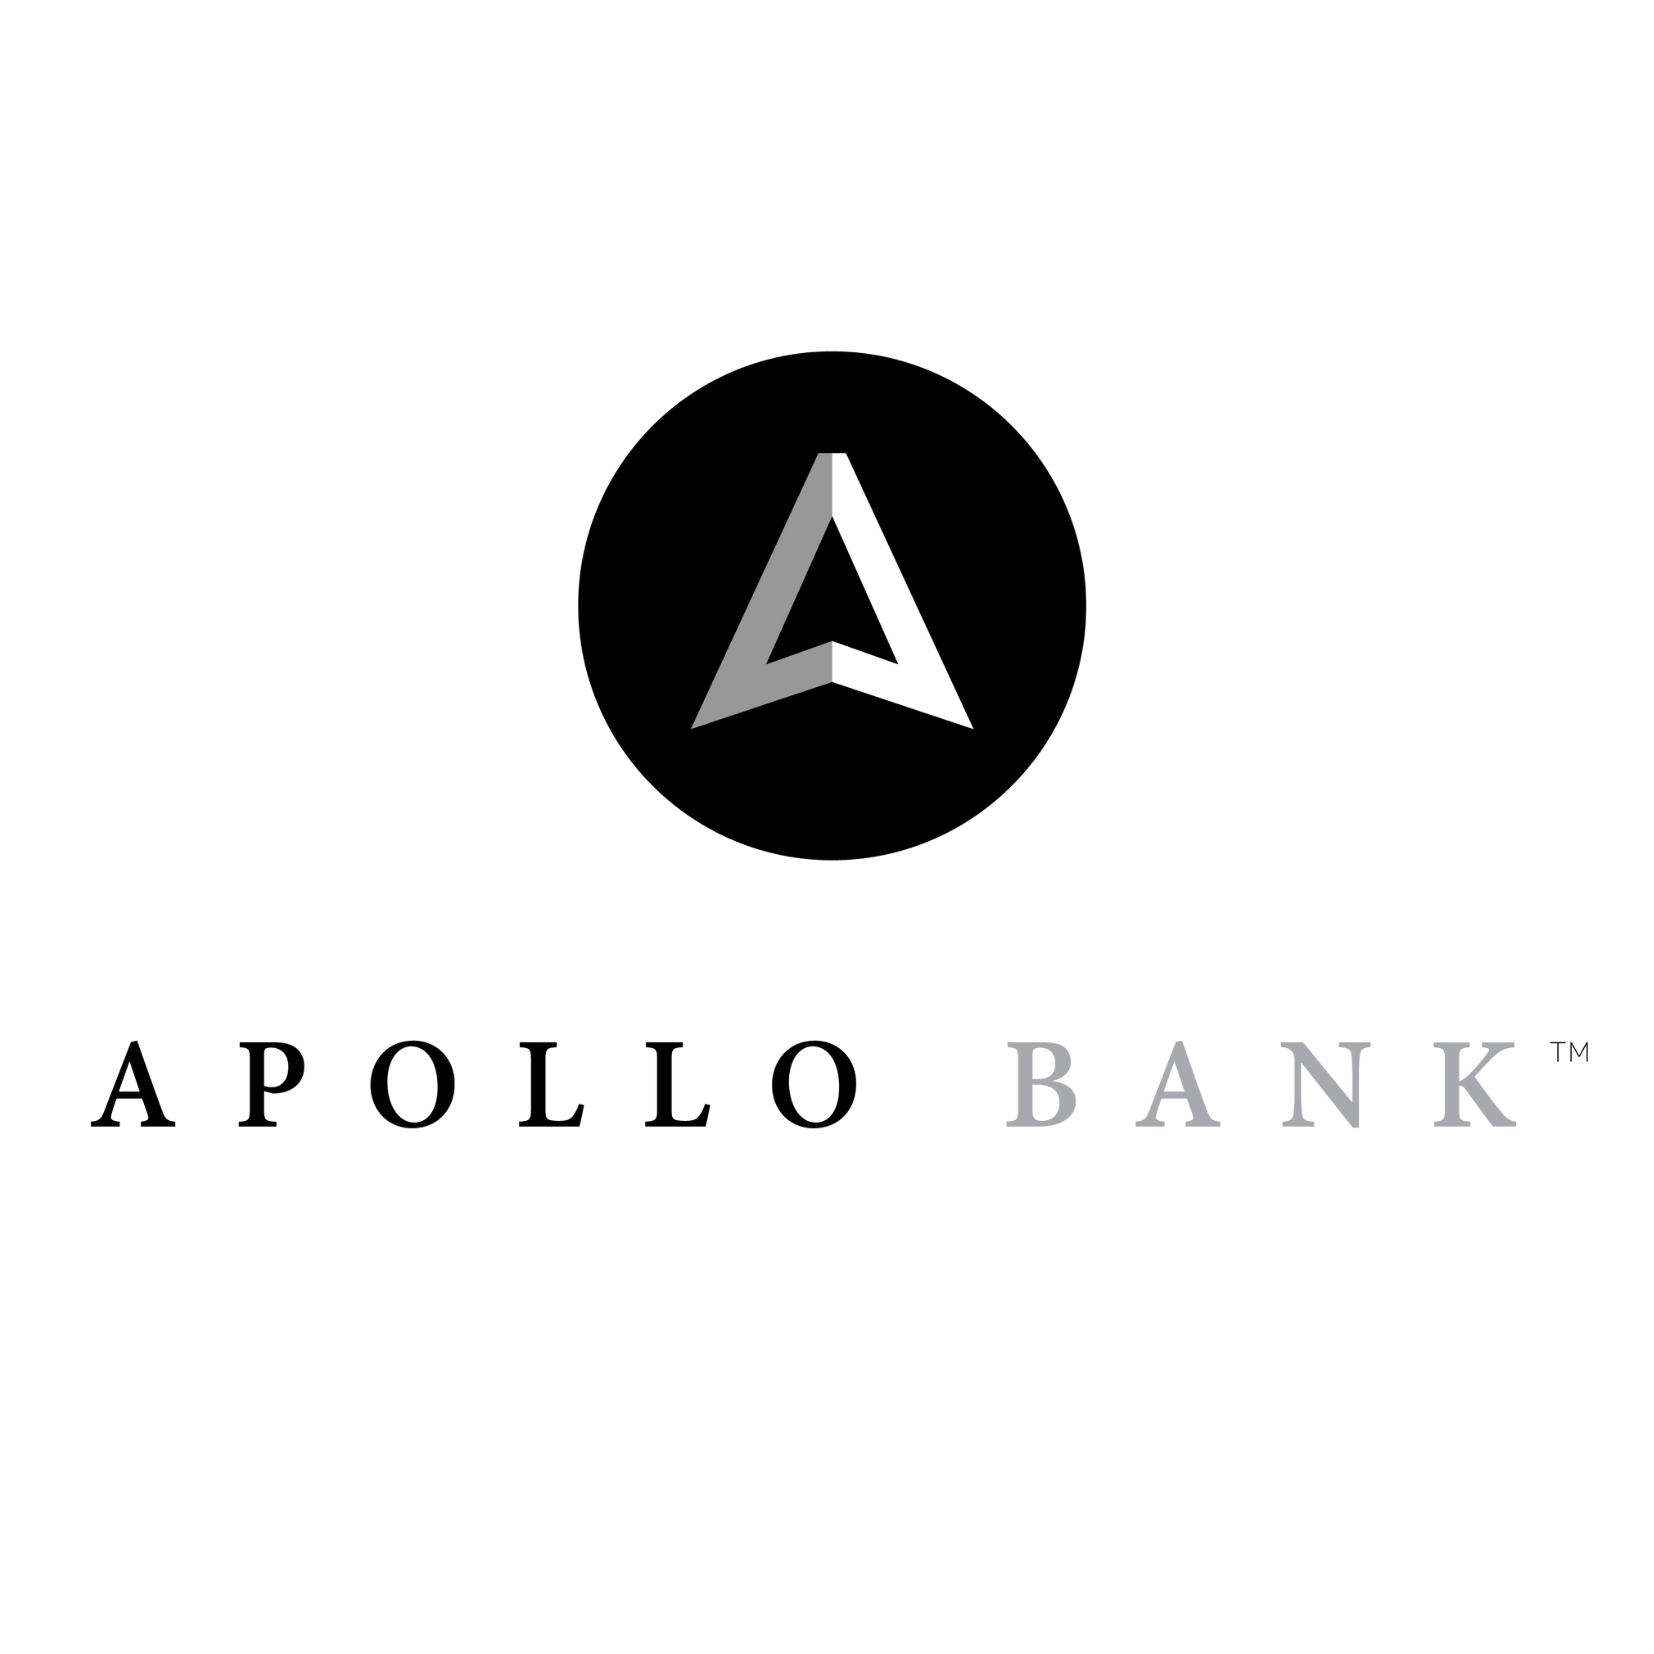 Apollo Bank Company Logo